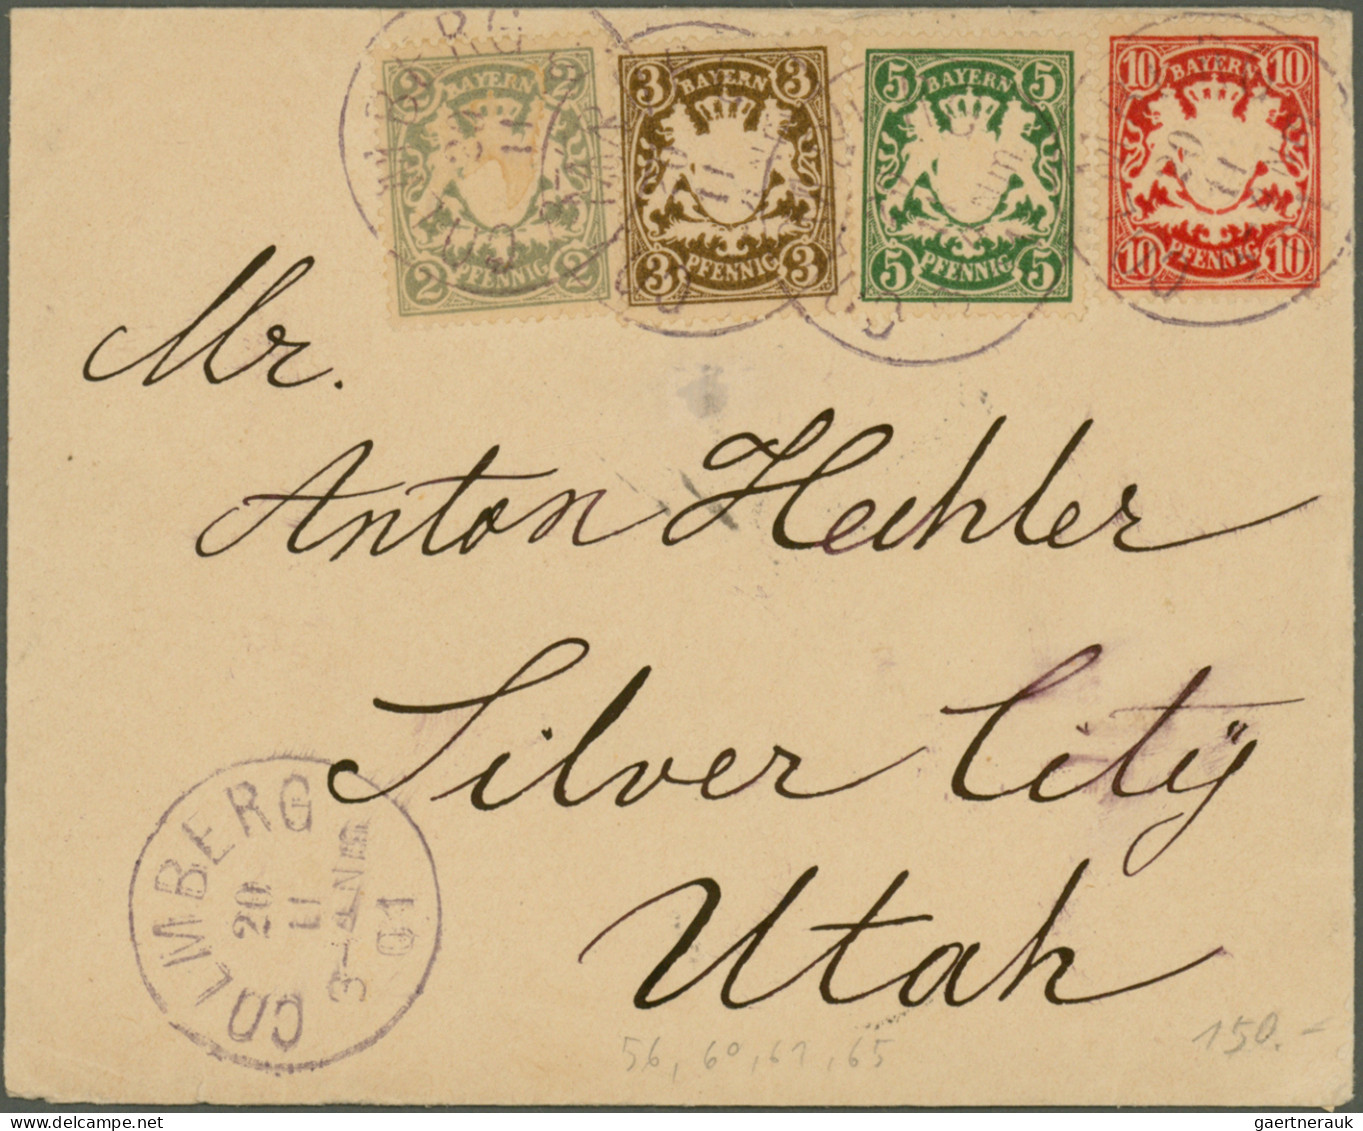 Bayern - Marken und Briefe: 1849/1920 (ca.), schöne Belege-Partie überwiegend eh